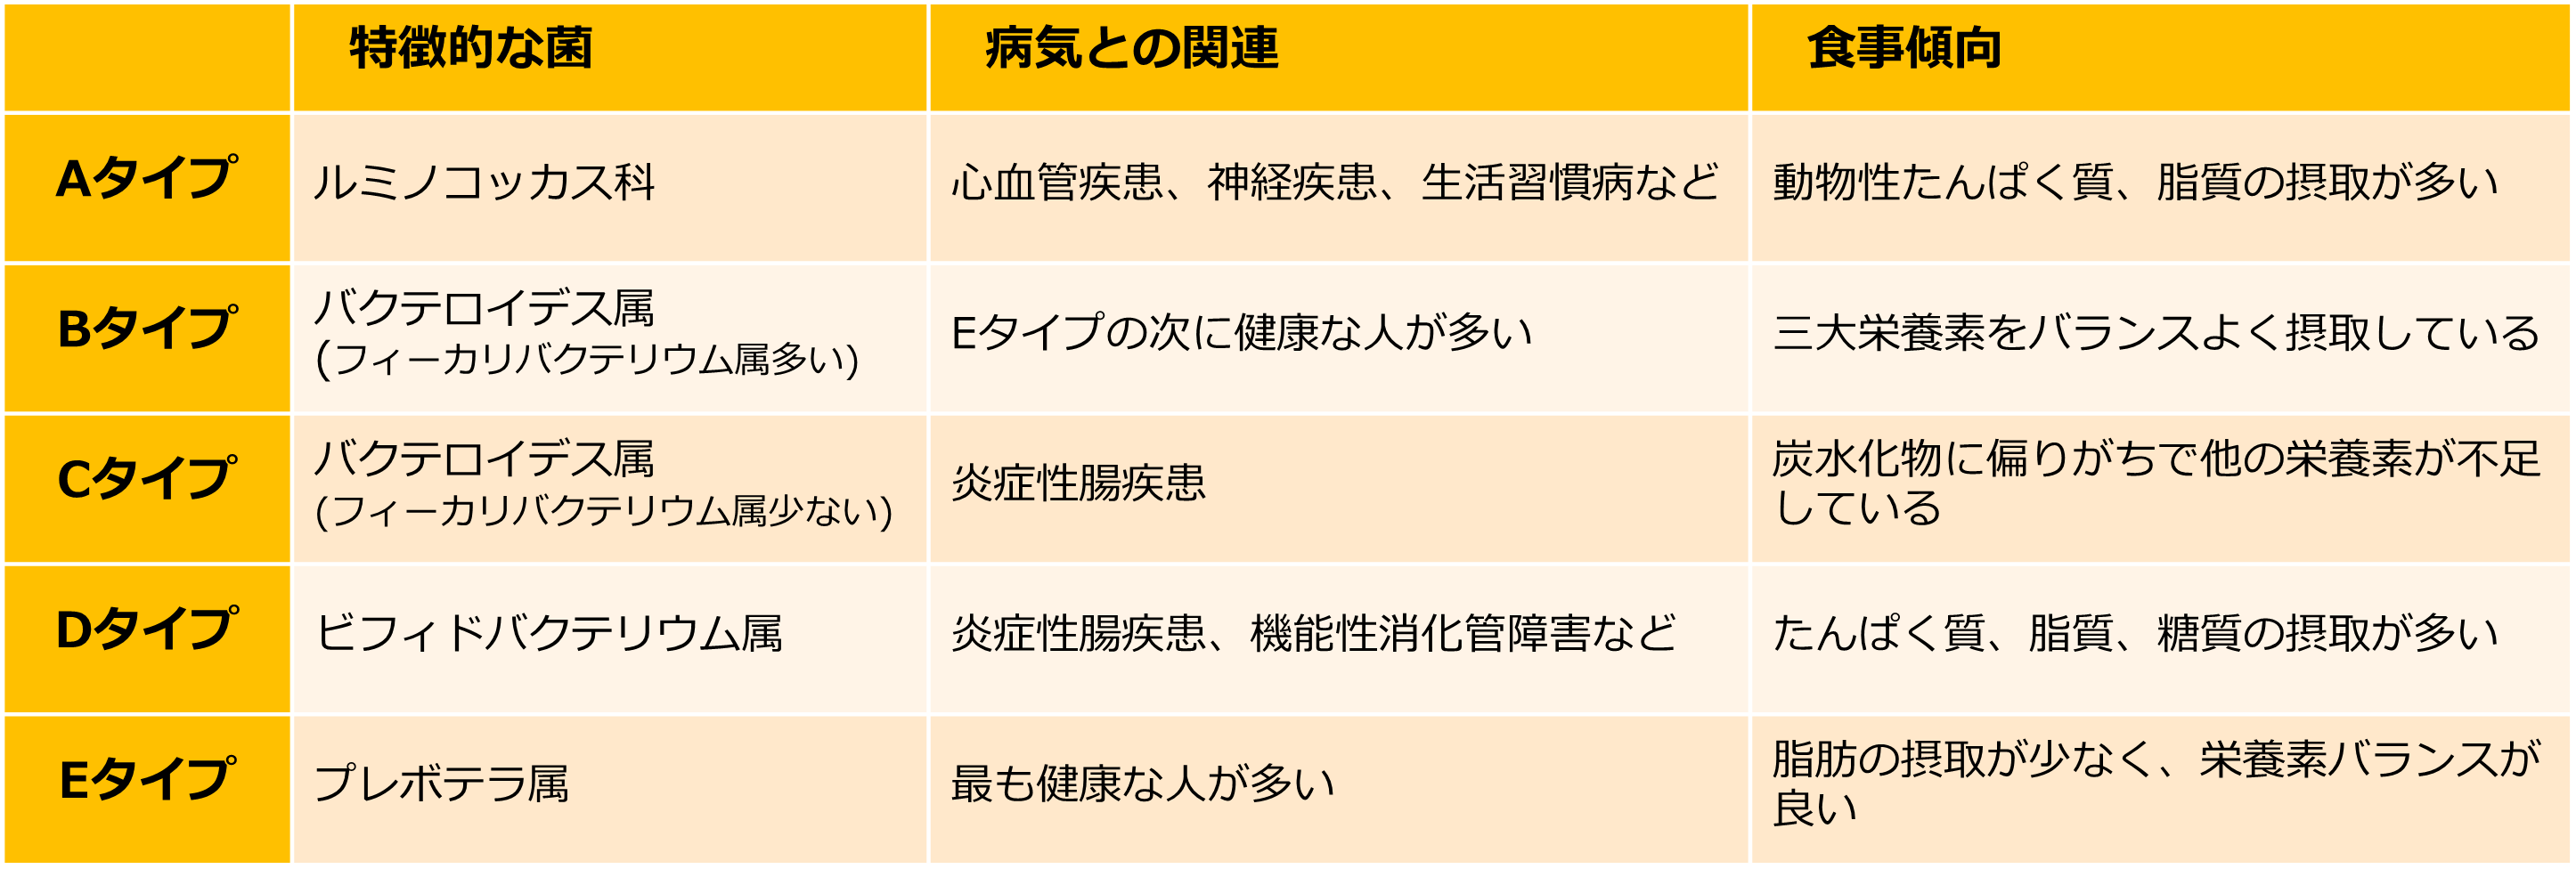 日本人の腸内細菌叢タイプの特徴